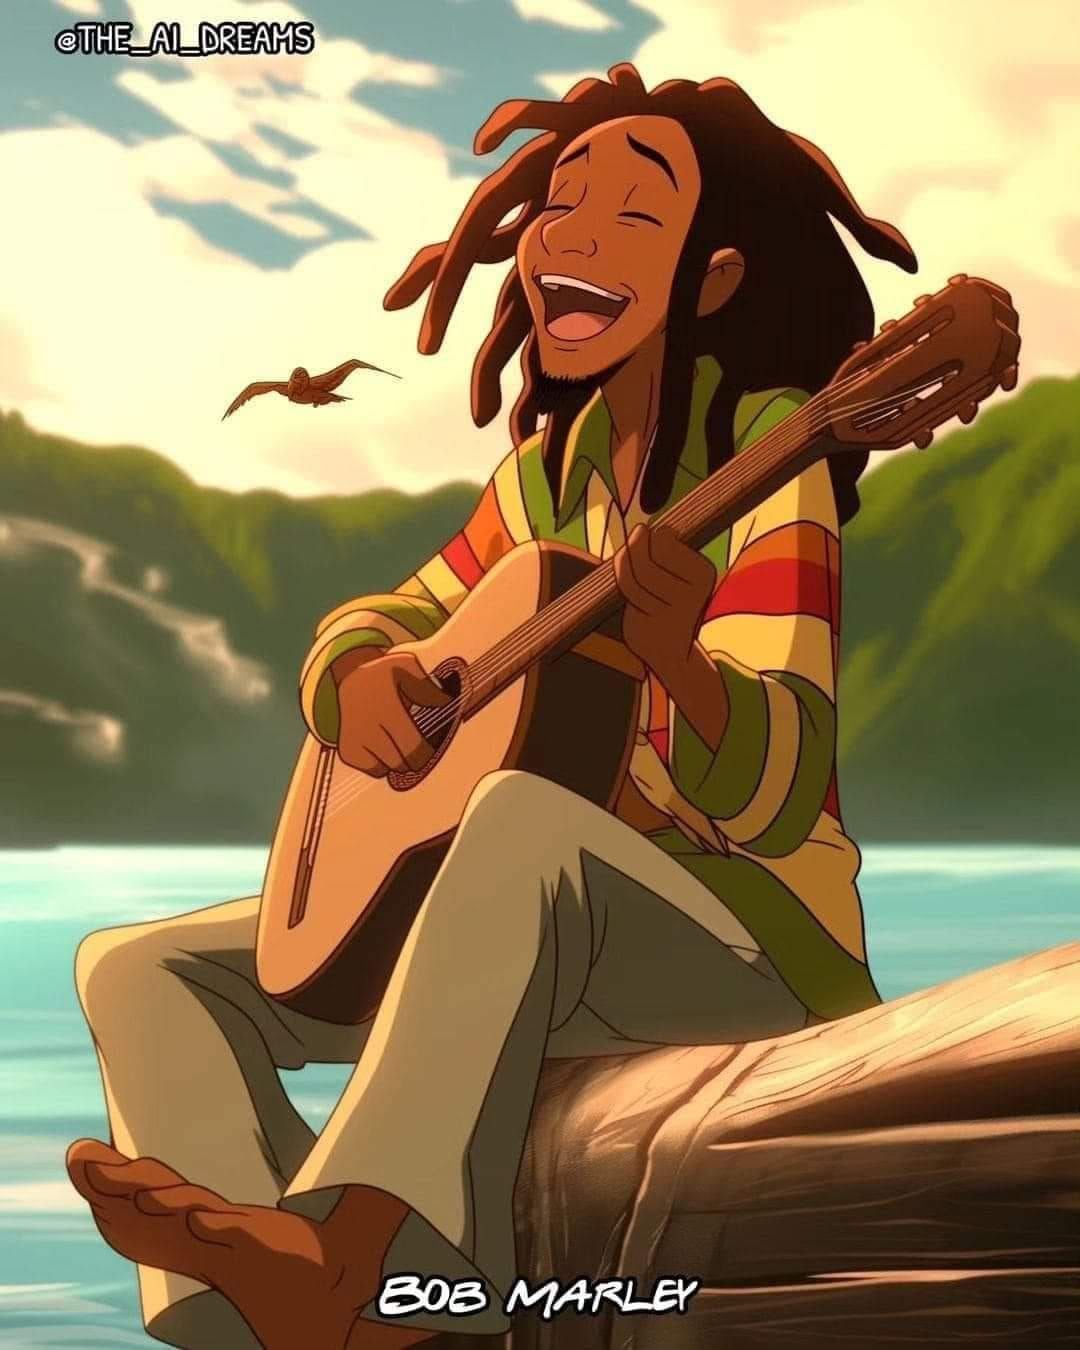 Bob Marley en estilo Disney según una IA